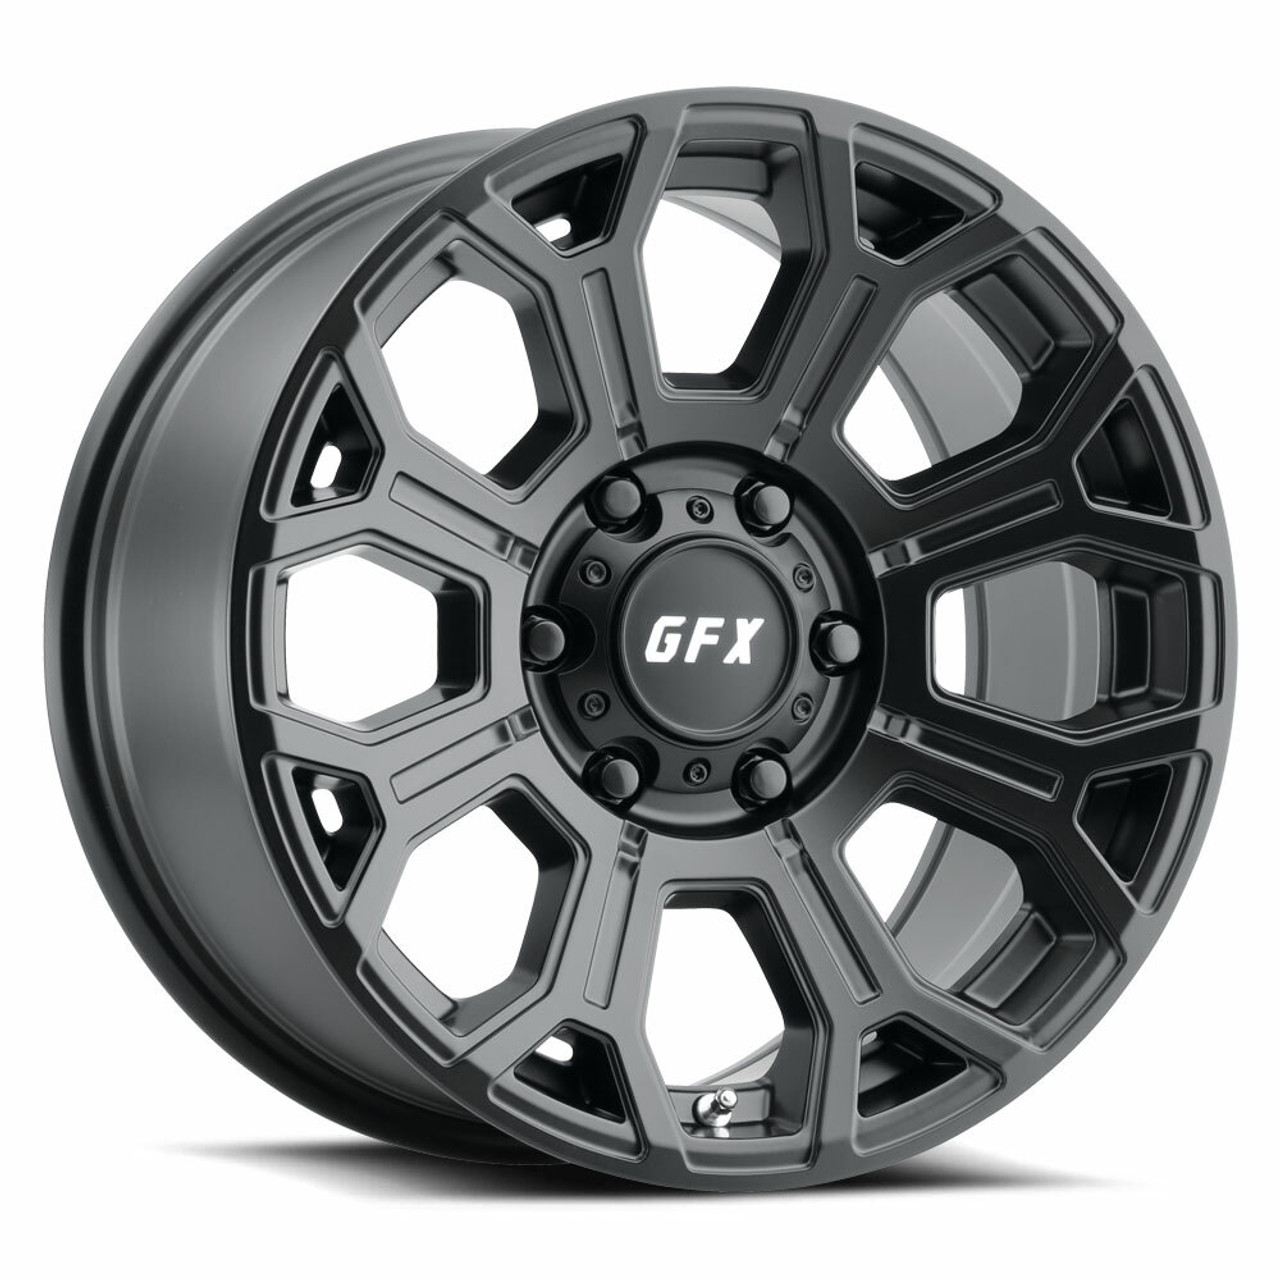 17" Voxx G-FX TR-19 MATTE BLACK Wheel 17x8.5 6x5.5 0mm Rim